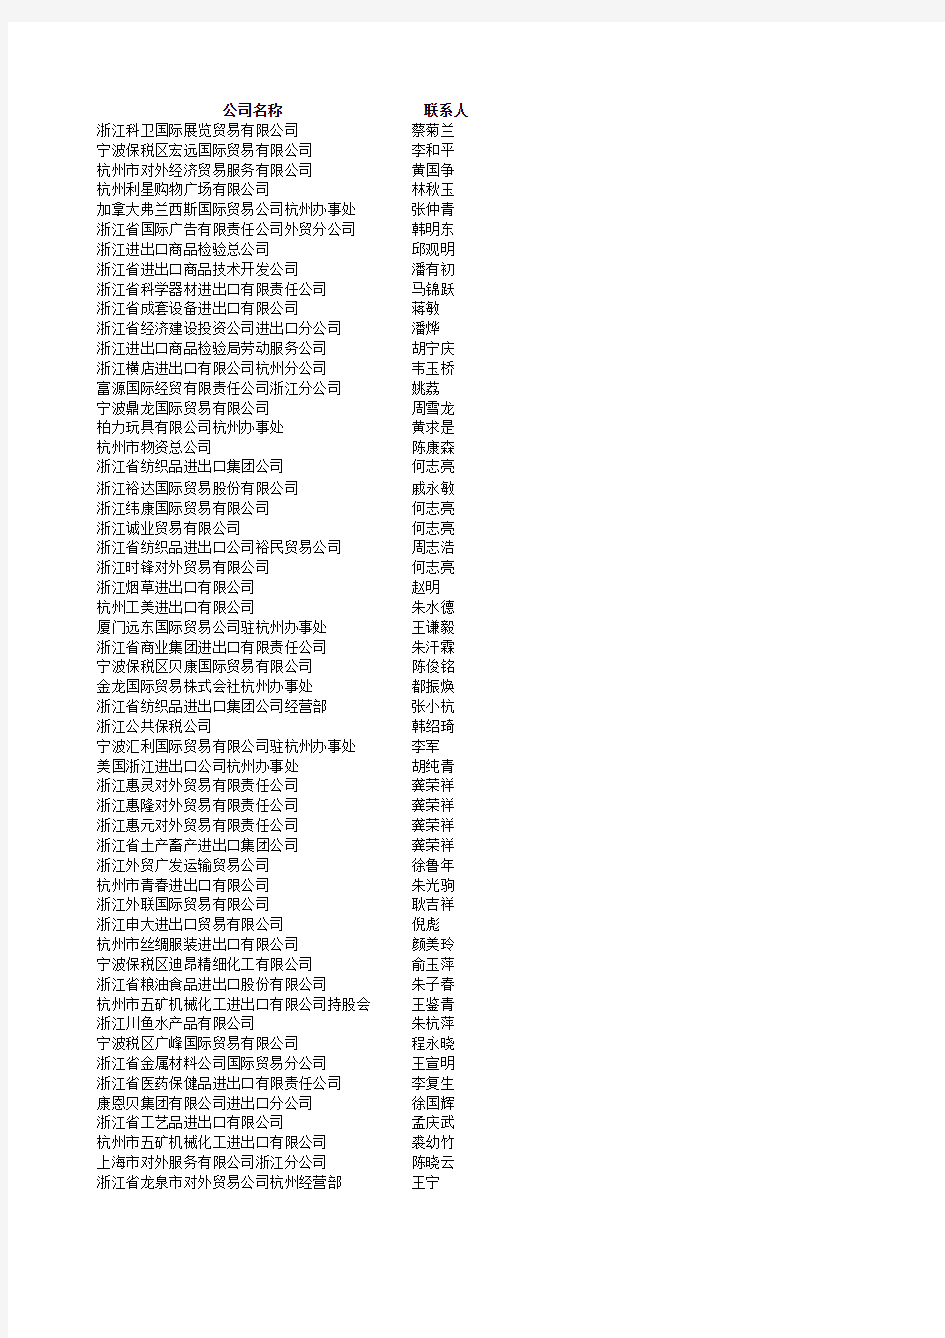 2009年浙江外贸进出口企业名单